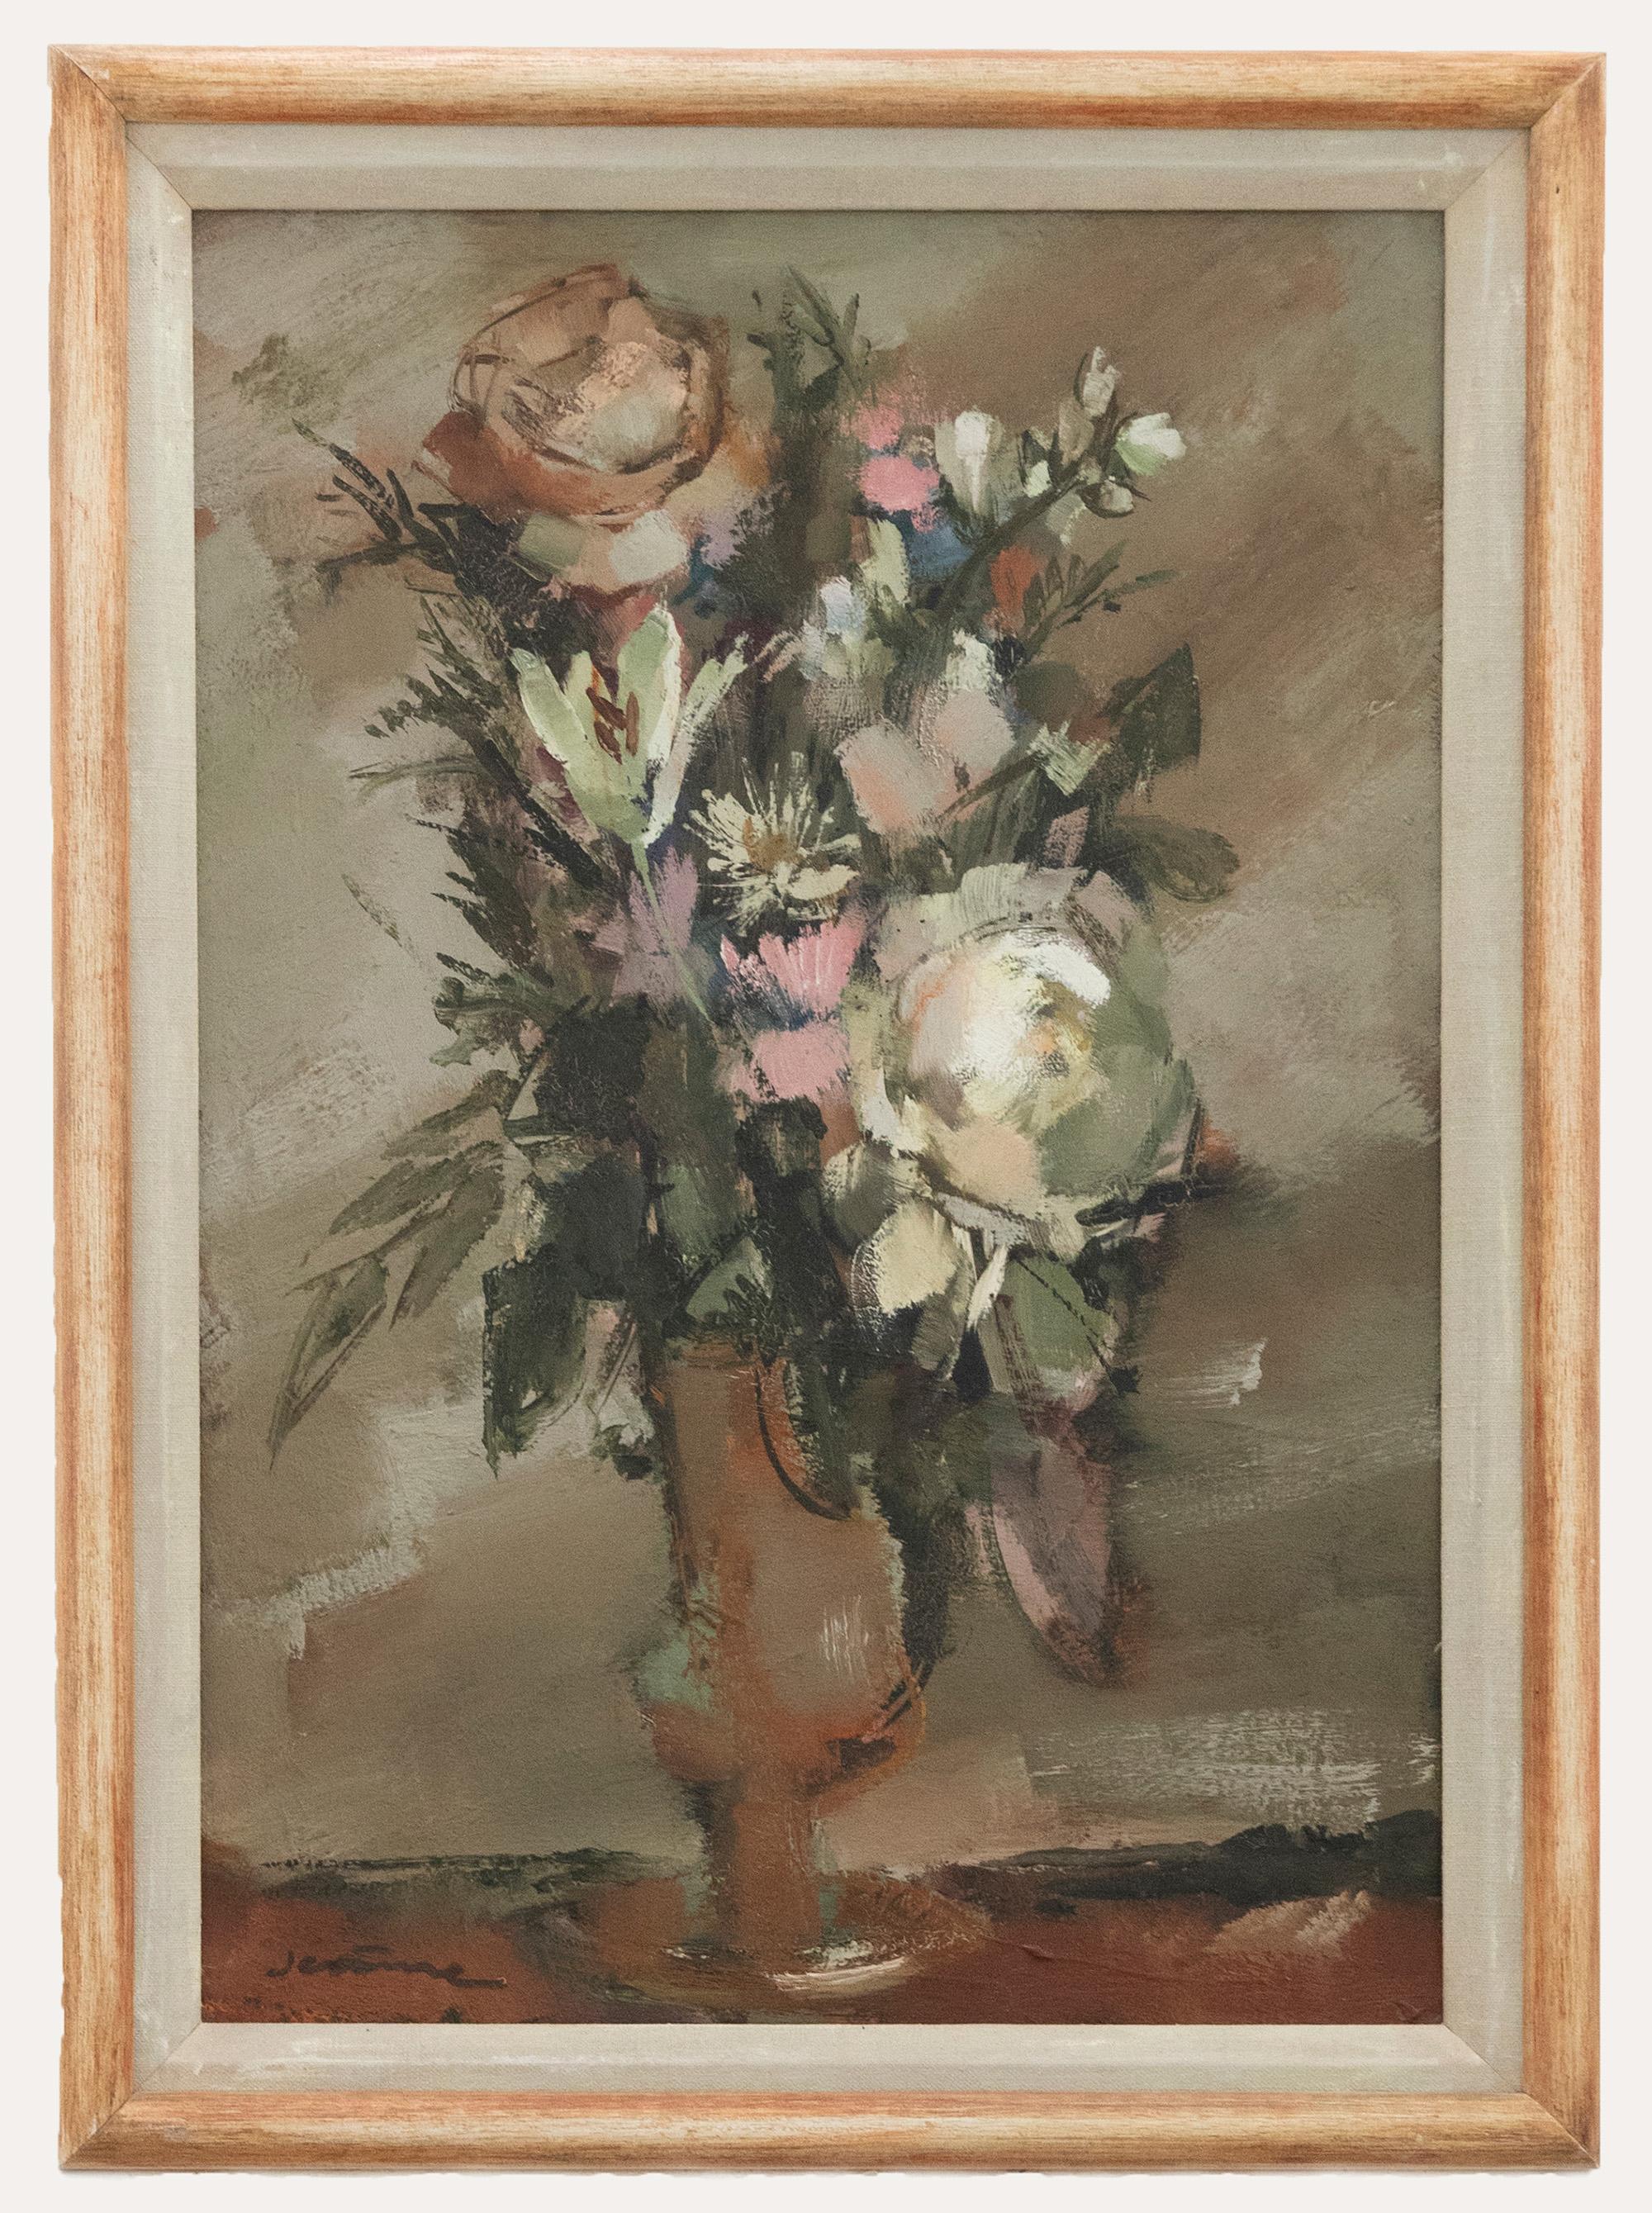 Une charmante étude de nature morte de l'artiste français Pierre Jerome. L'artiste capture la scène de manière expressive en représentant des roses et des pivoines dans un grand vase. Signé en bas à droite. Présenté dans un cadre en bois avec un